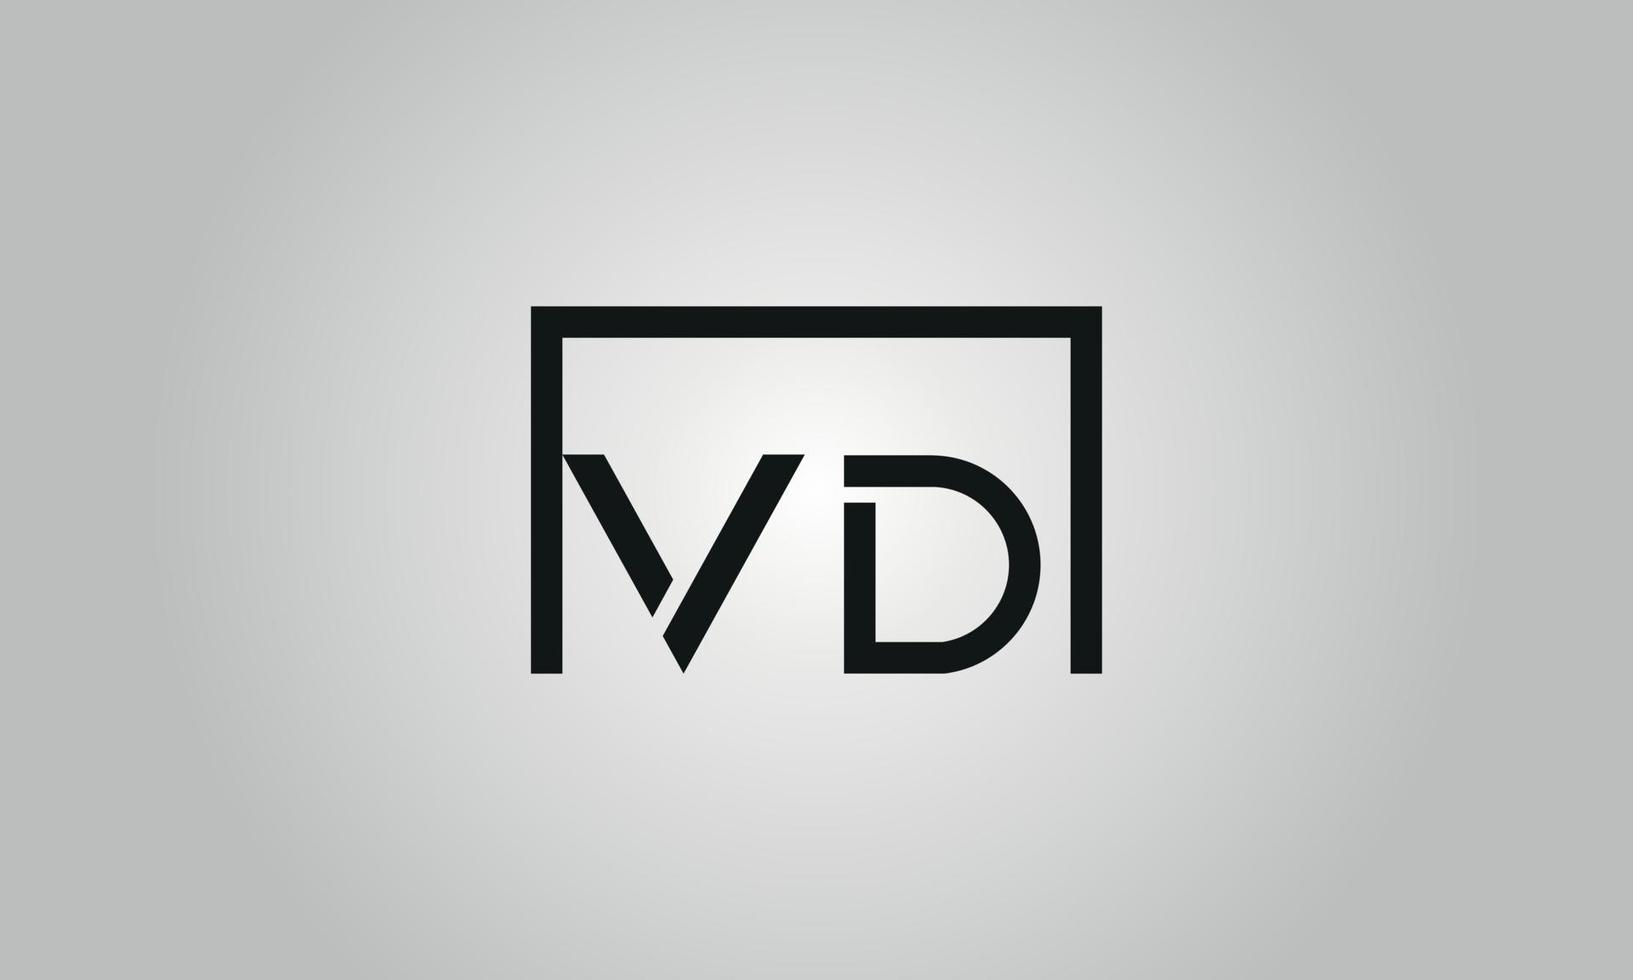 Buchstabe vd-Logo-Design. vd-Logo mit quadratischer Form in schwarzen Farben Vektor kostenlose Vektorvorlage.